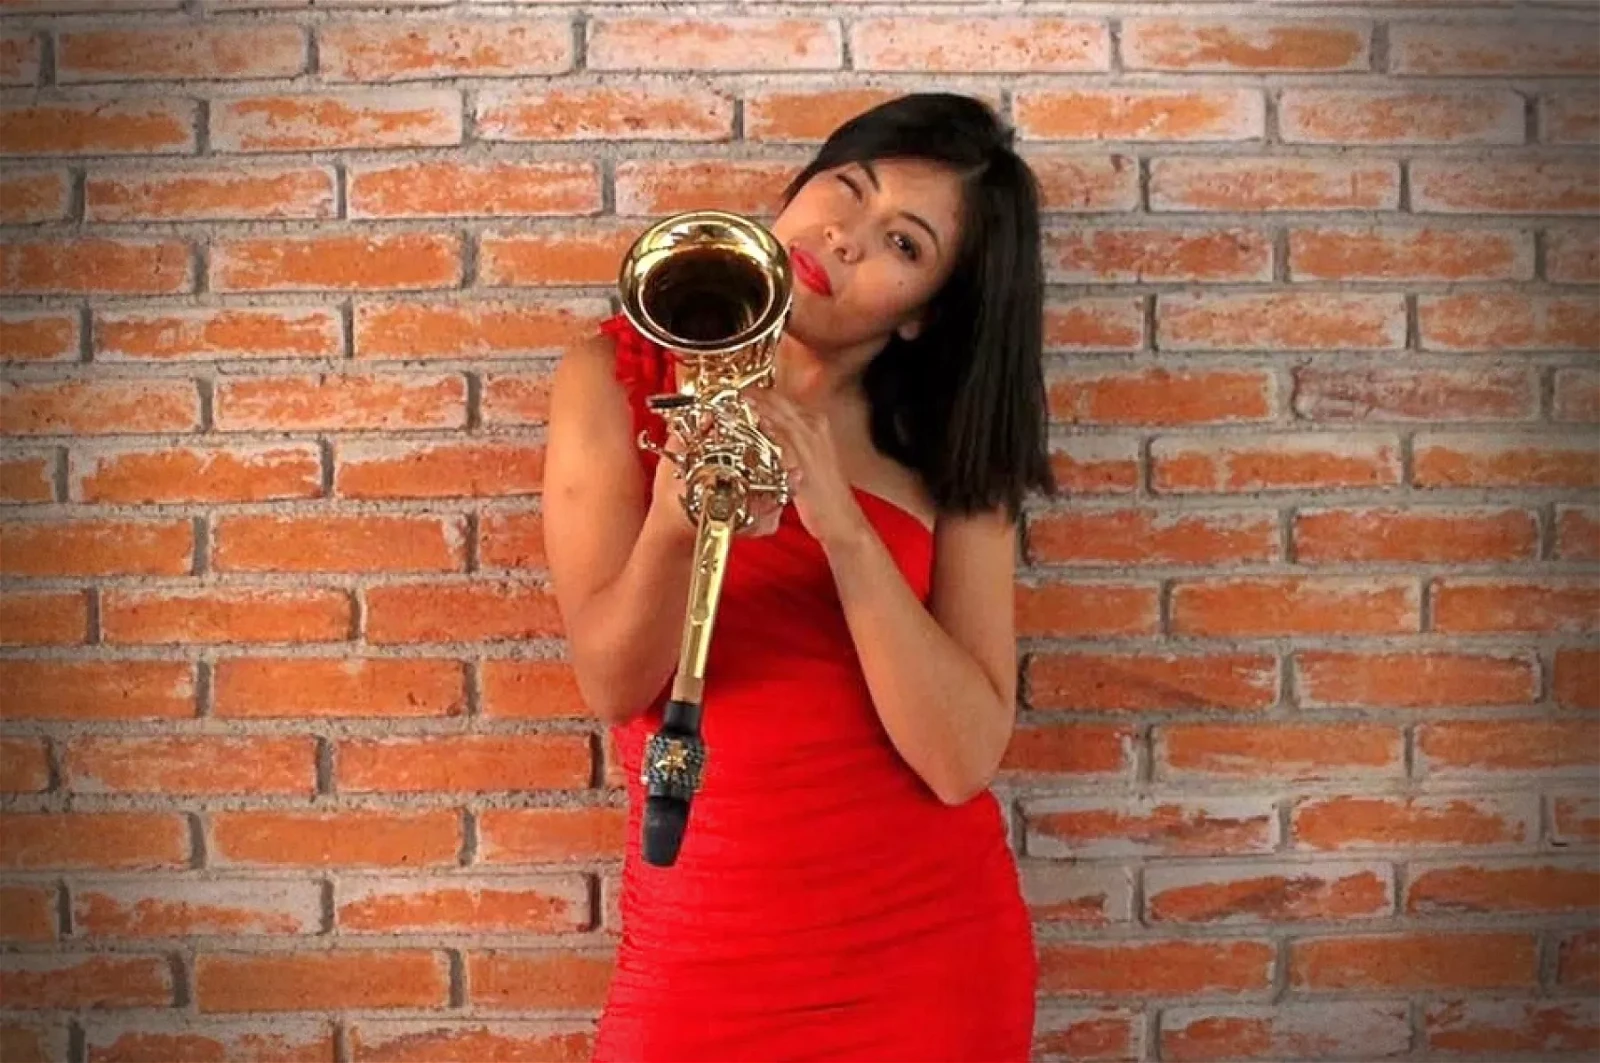 María Elena Ríos is a Mexican Saxophonist